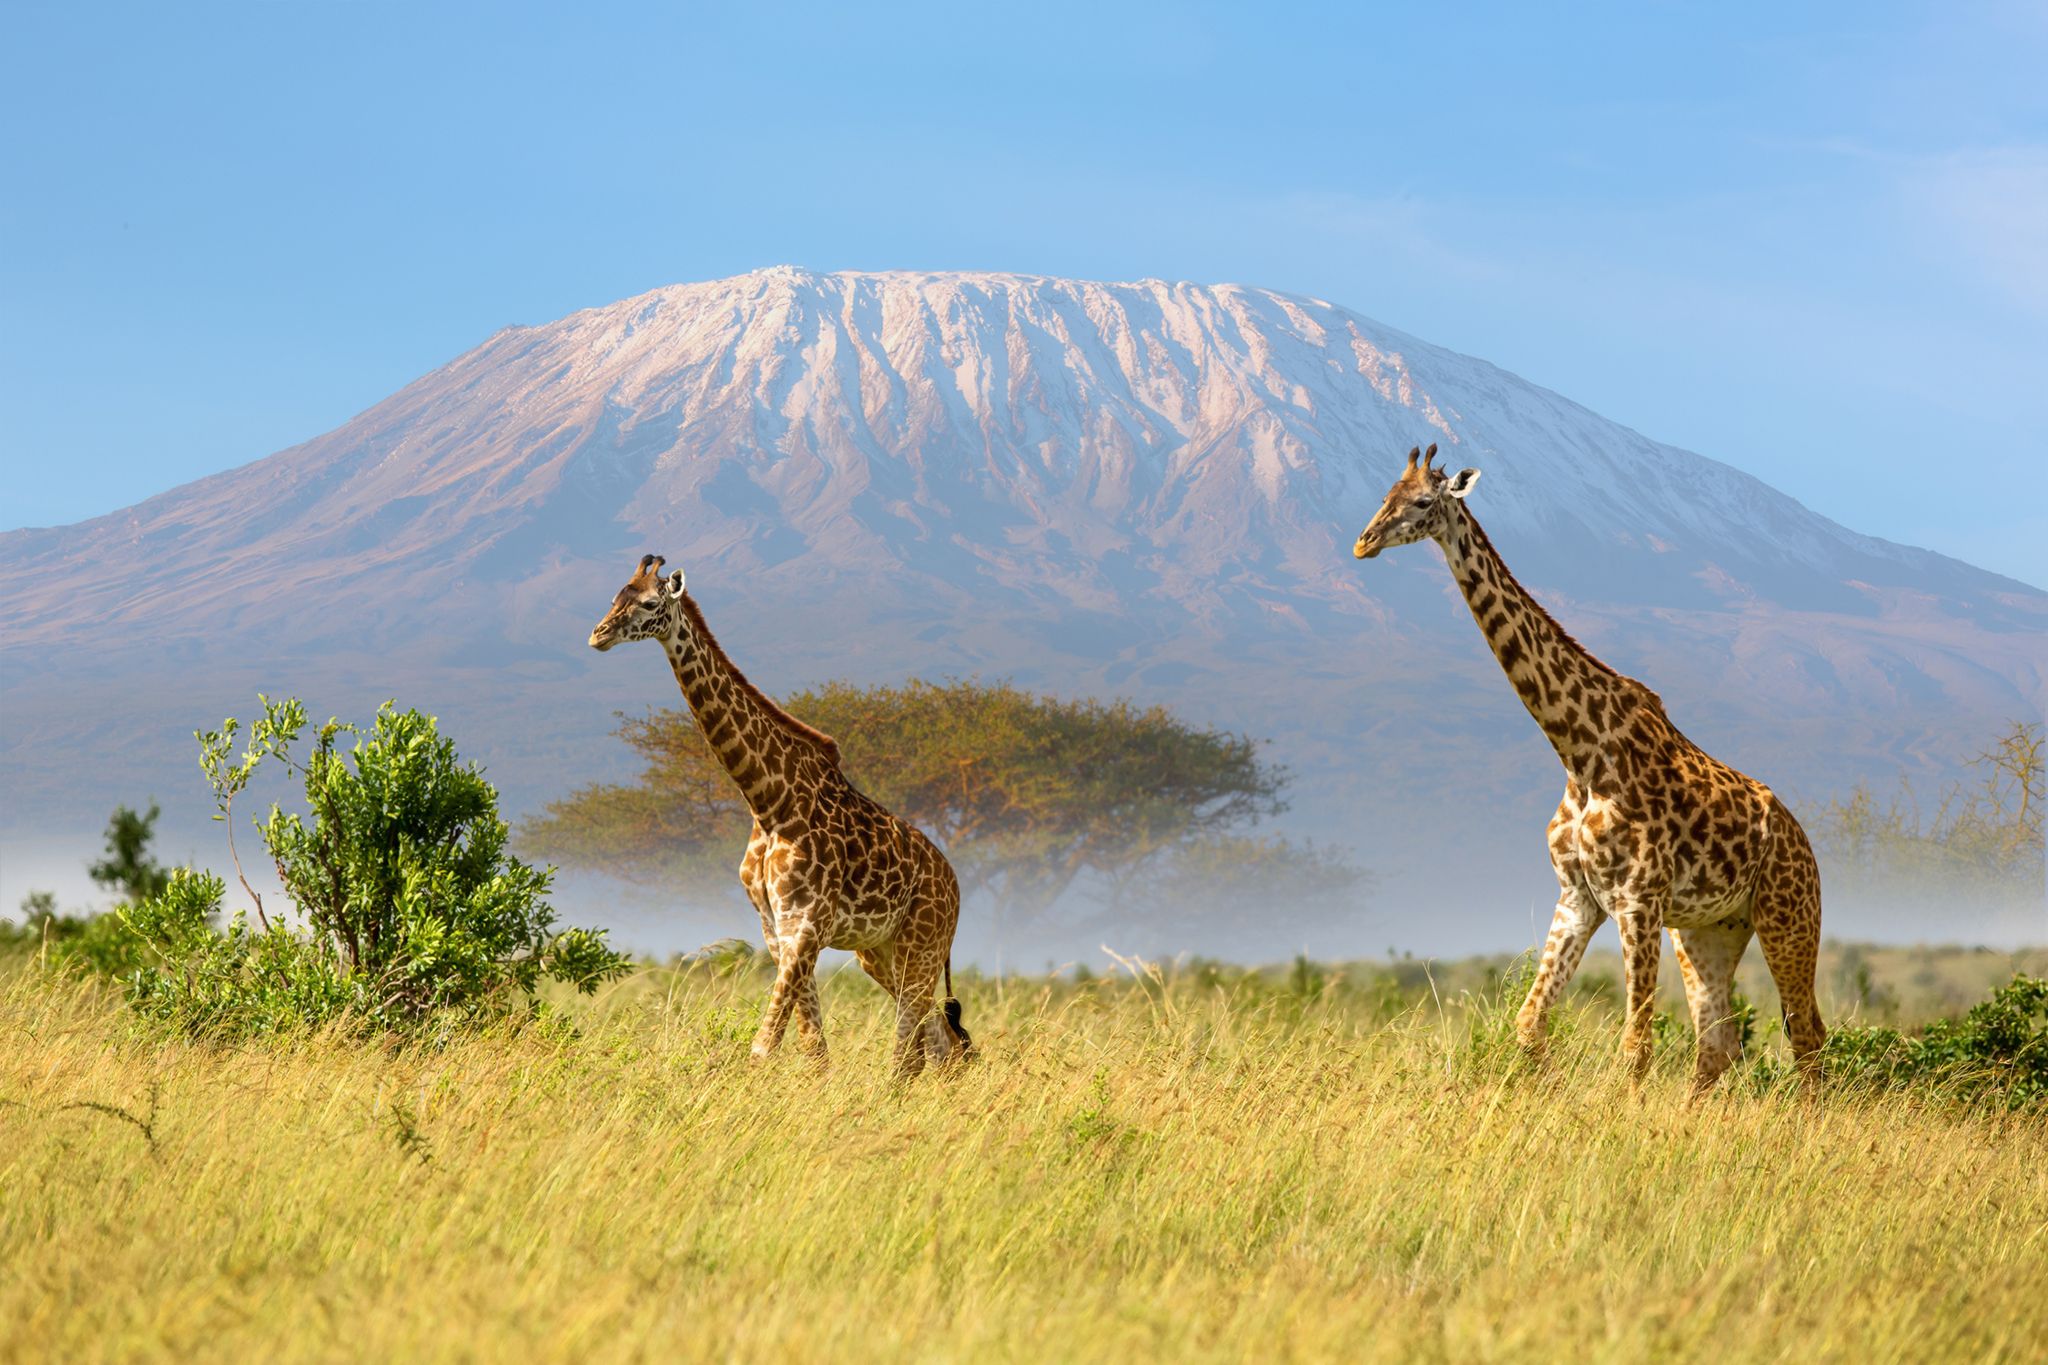 Giraffes walking in front of Mount Kilimanjaro